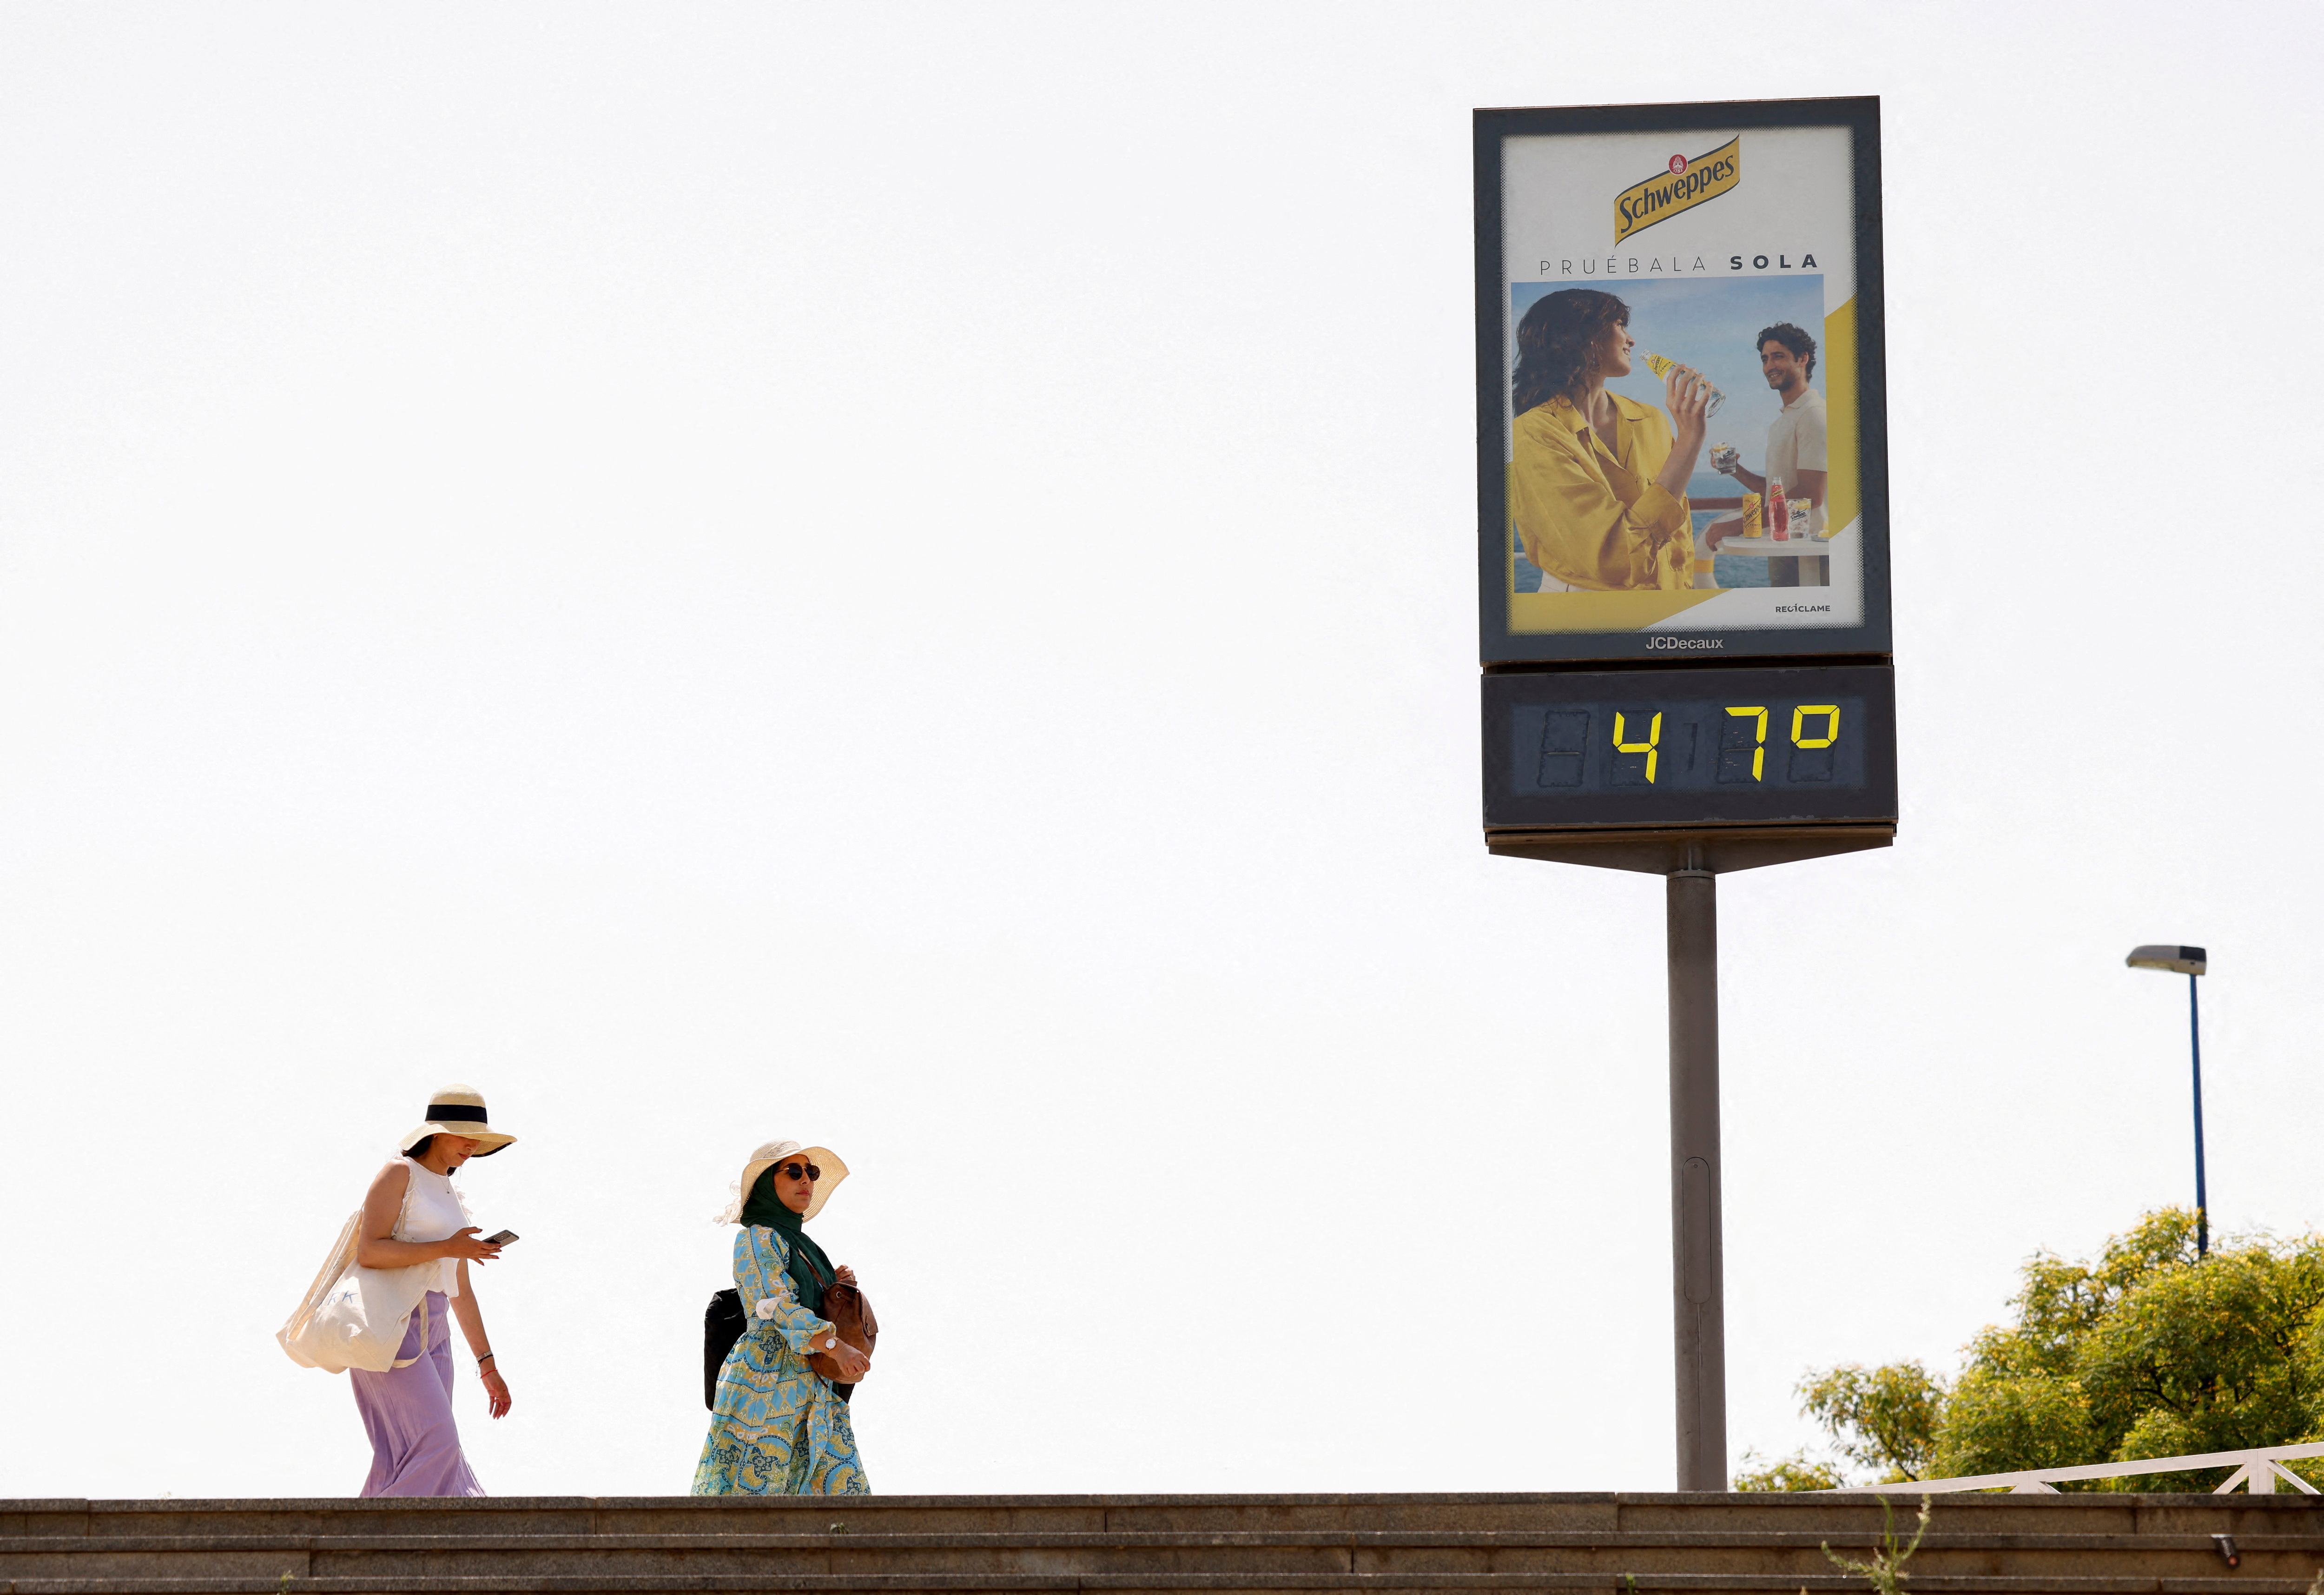 FOTO DE ARCHIVO: Mujeres caminan junto a un termómetro que marca 47 grados Celsius (116,6 grados Fahrenheit) durante la primera ola de calor del año en Sevilla, España, el 11 de junio de 2022. REUTERS/Marcelo del Pozo/Foto de archivo